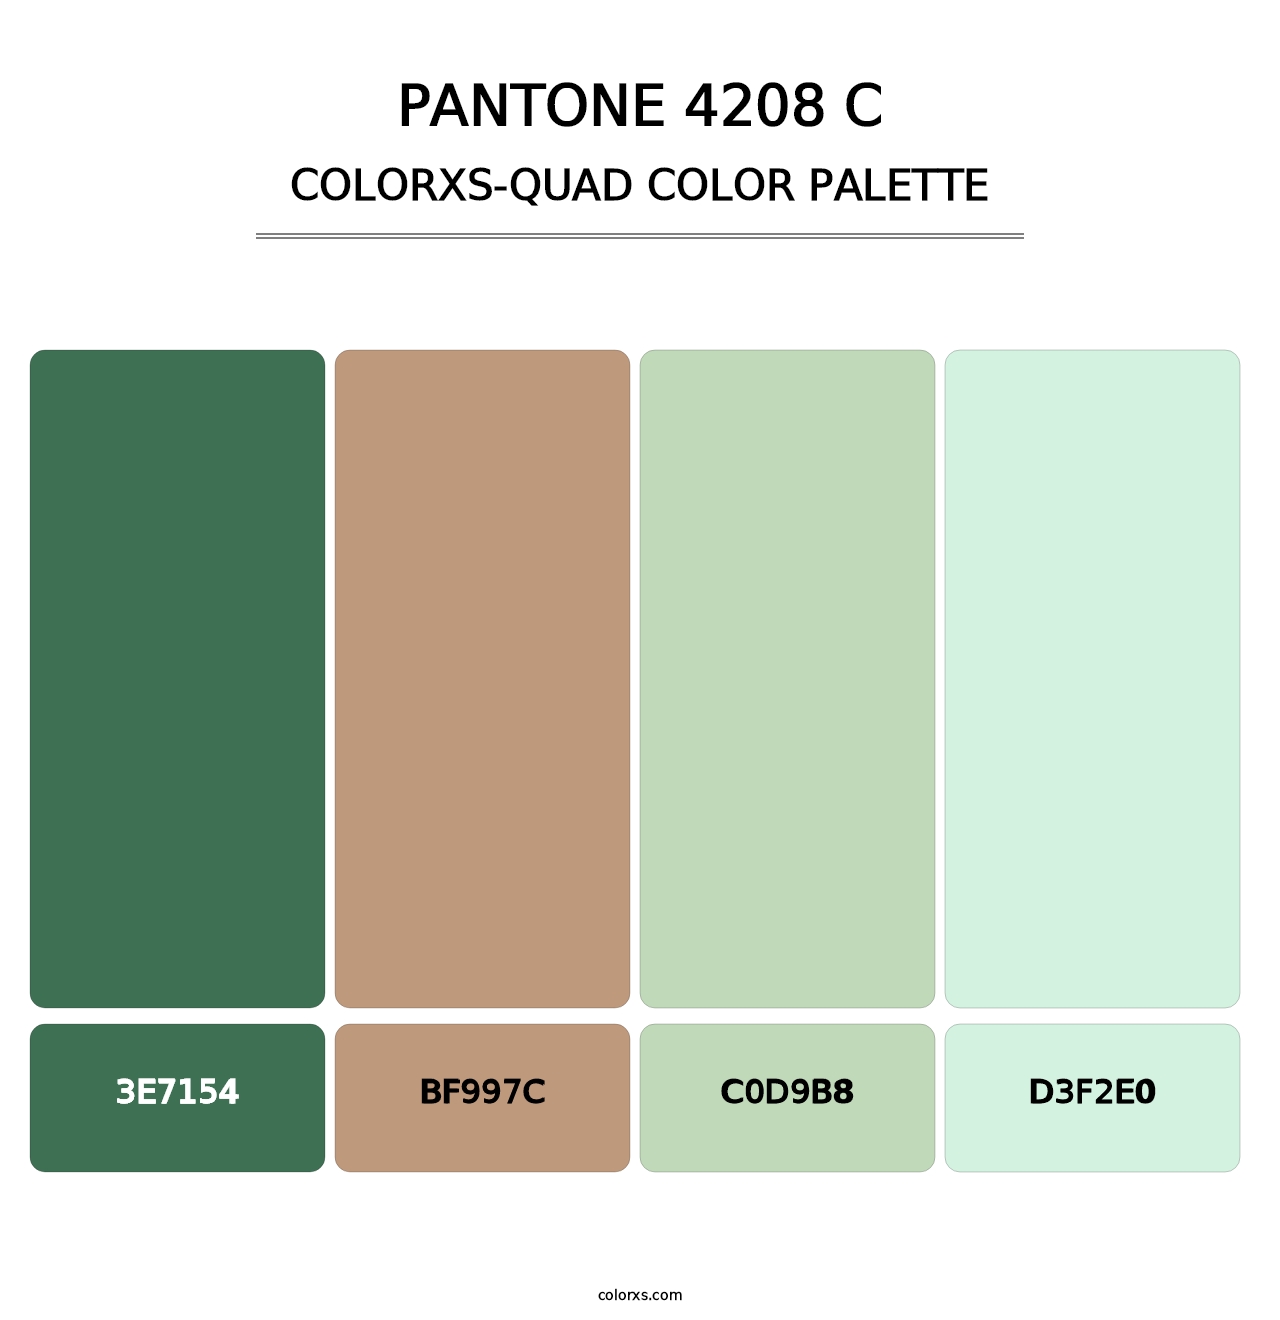 PANTONE 4208 C - Colorxs Quad Palette